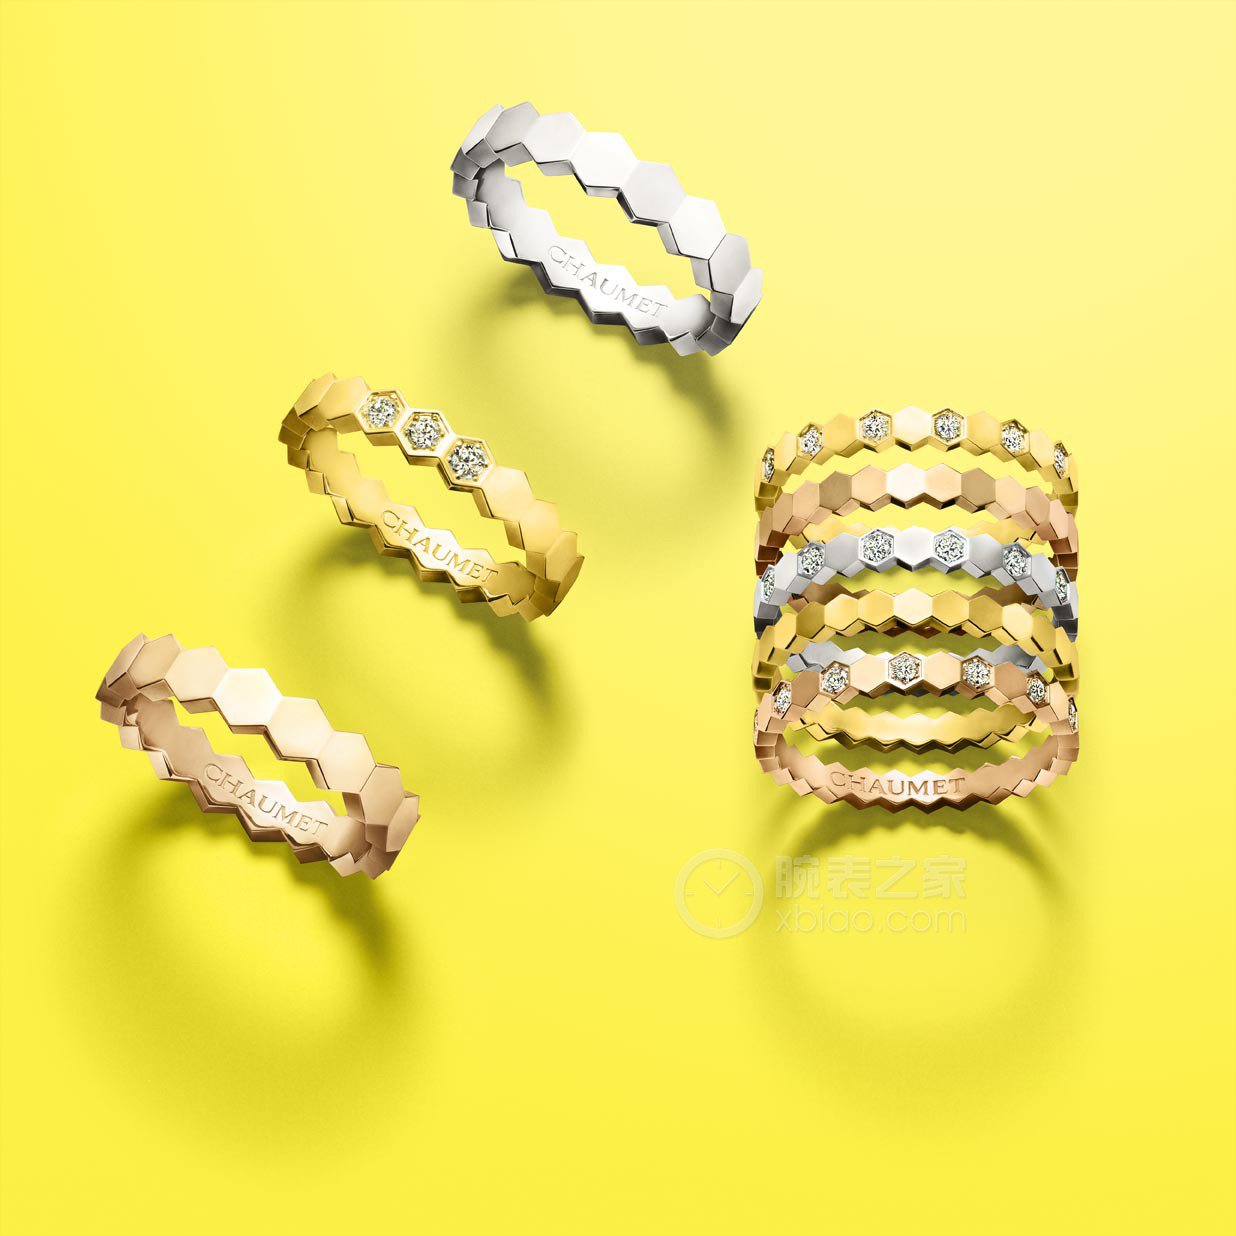 高清图|Enzo经典系列18K黃金彩色宝石戒指戒指图片1|腕表之家-珠宝